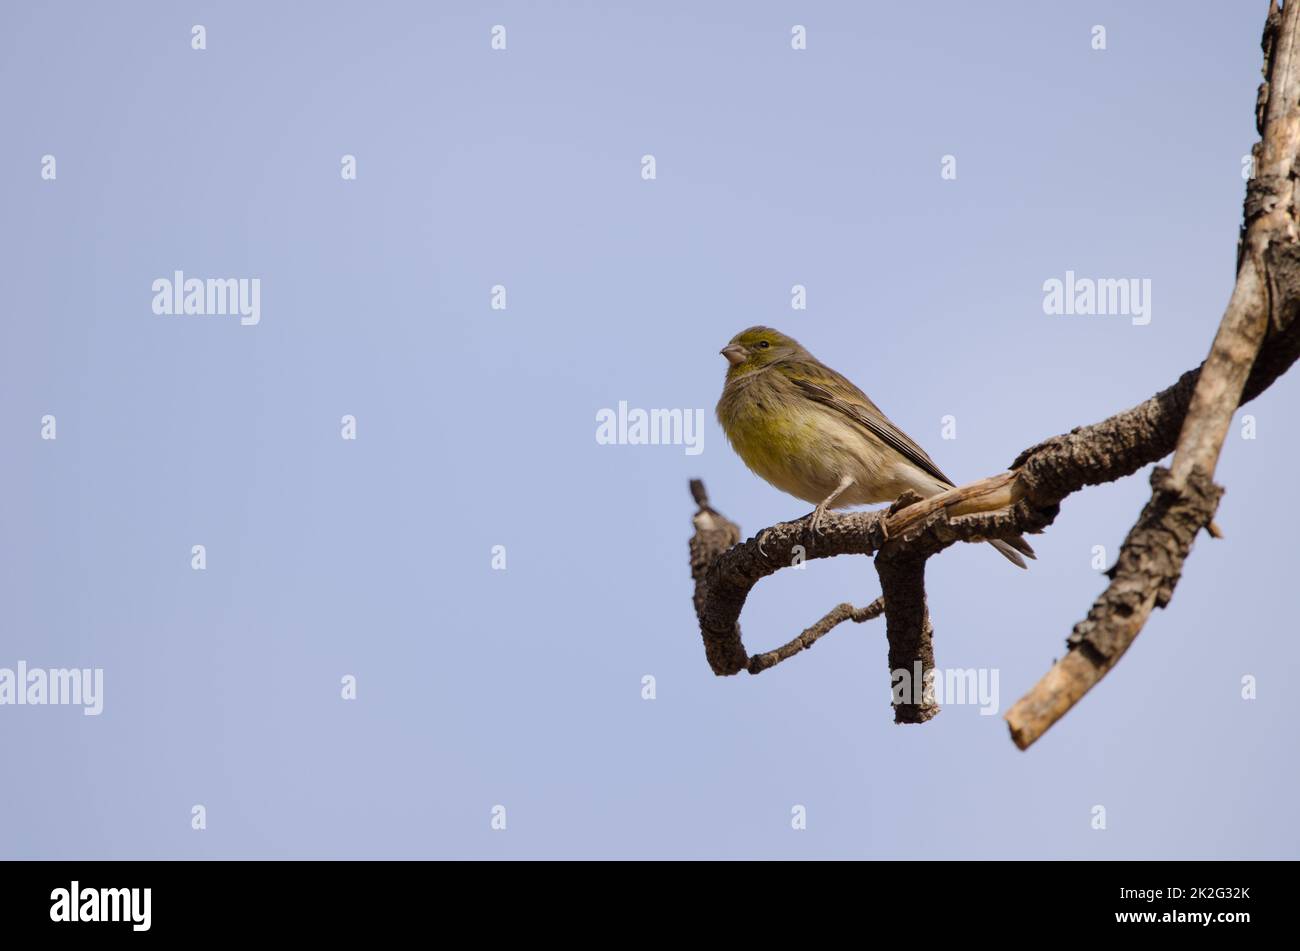 Atlantic canary Serinus canaria. Stock Photo